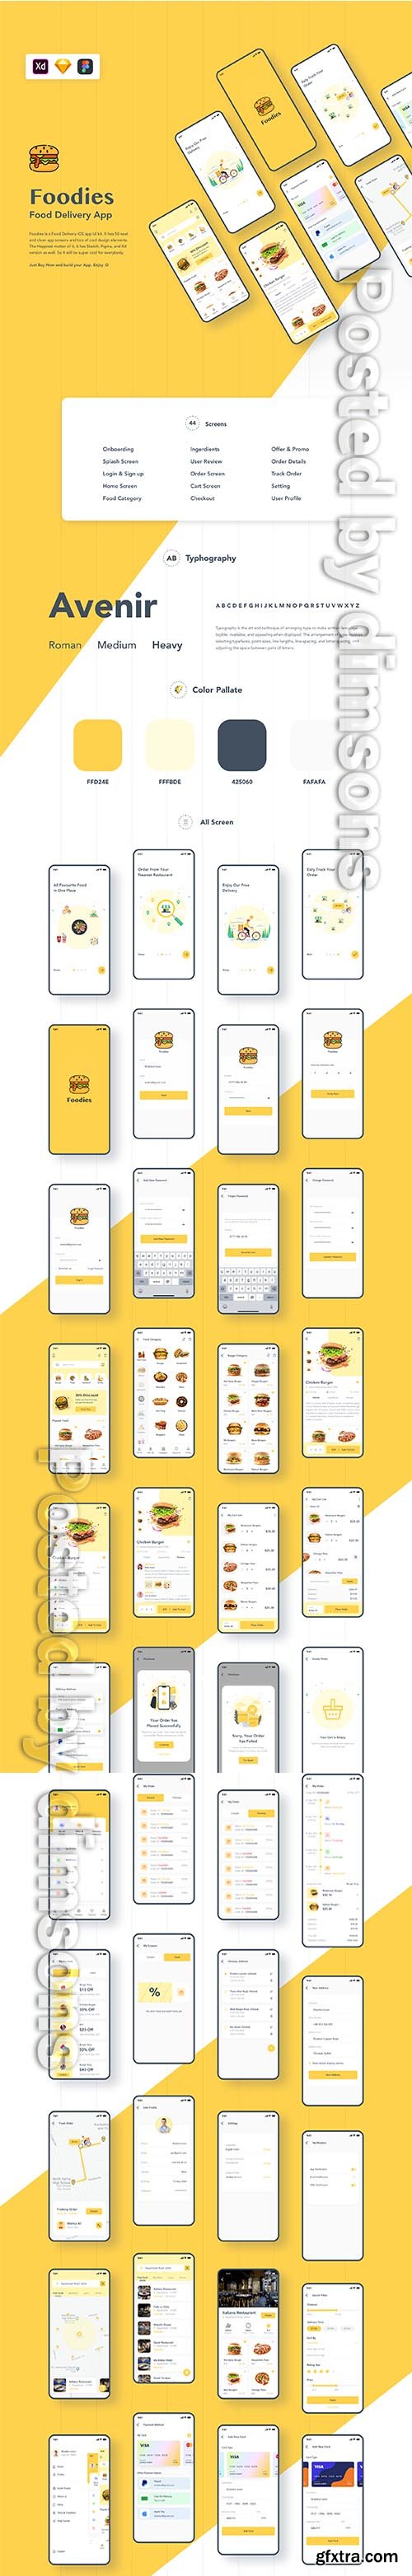 Foodies: Food ordering & delivery IOS app UI kit